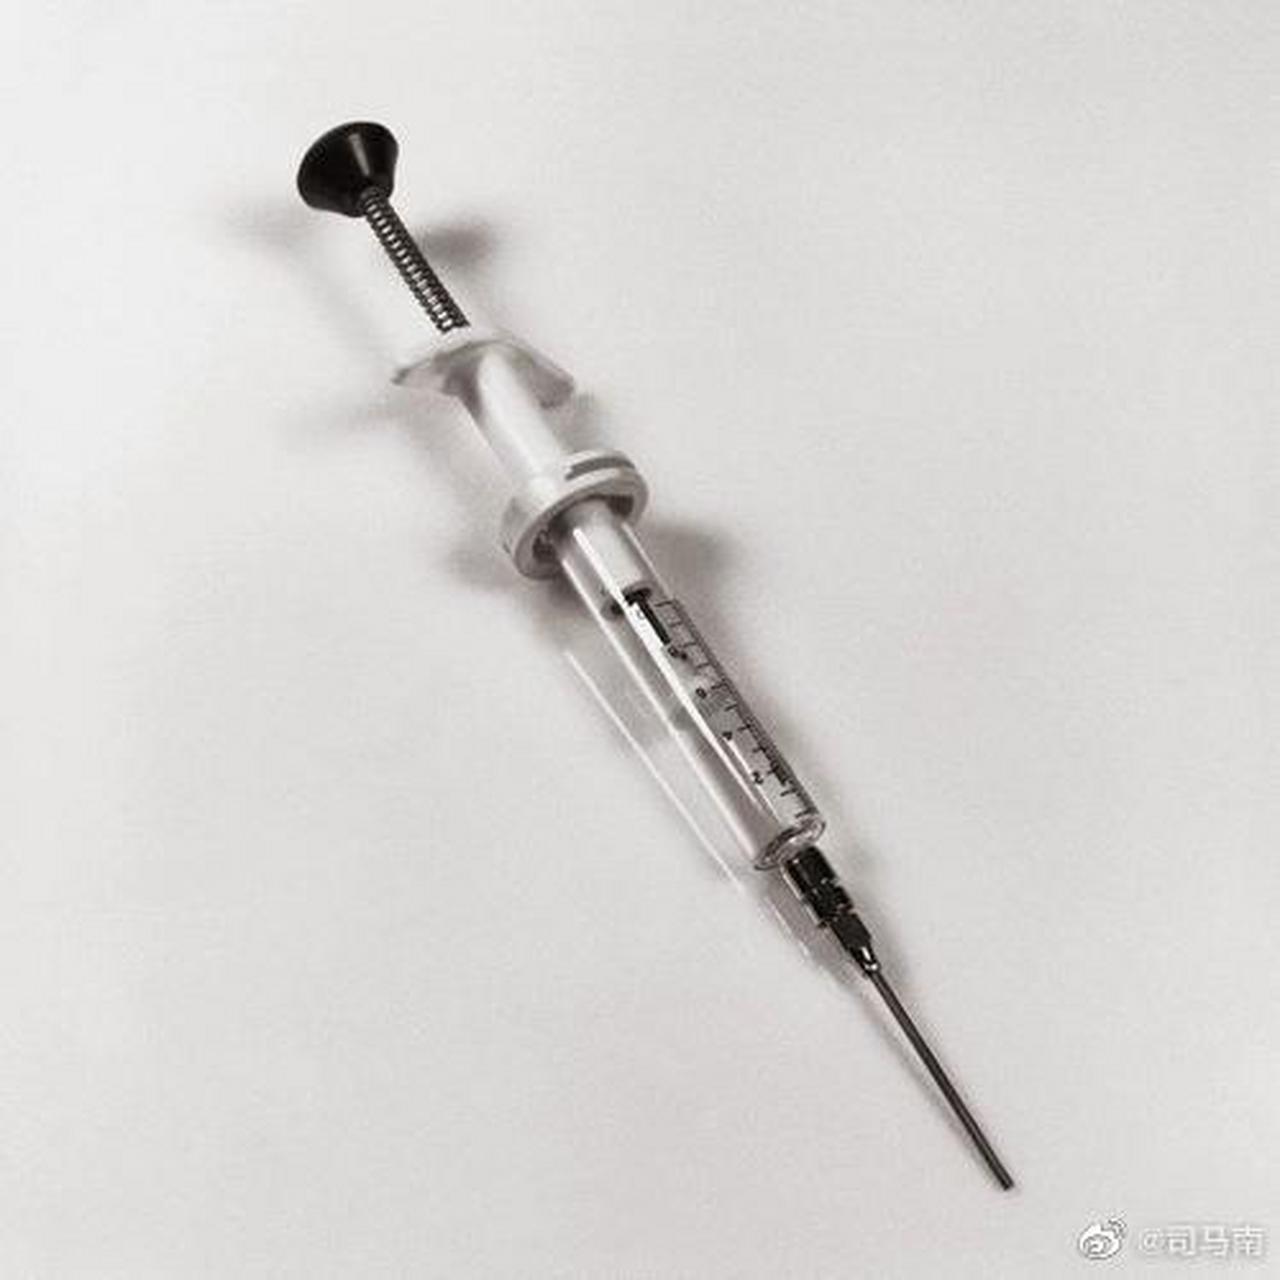 防治新冠接种疫苗需要大量针头注射器,美国国会议员惊讶地发现,80%的